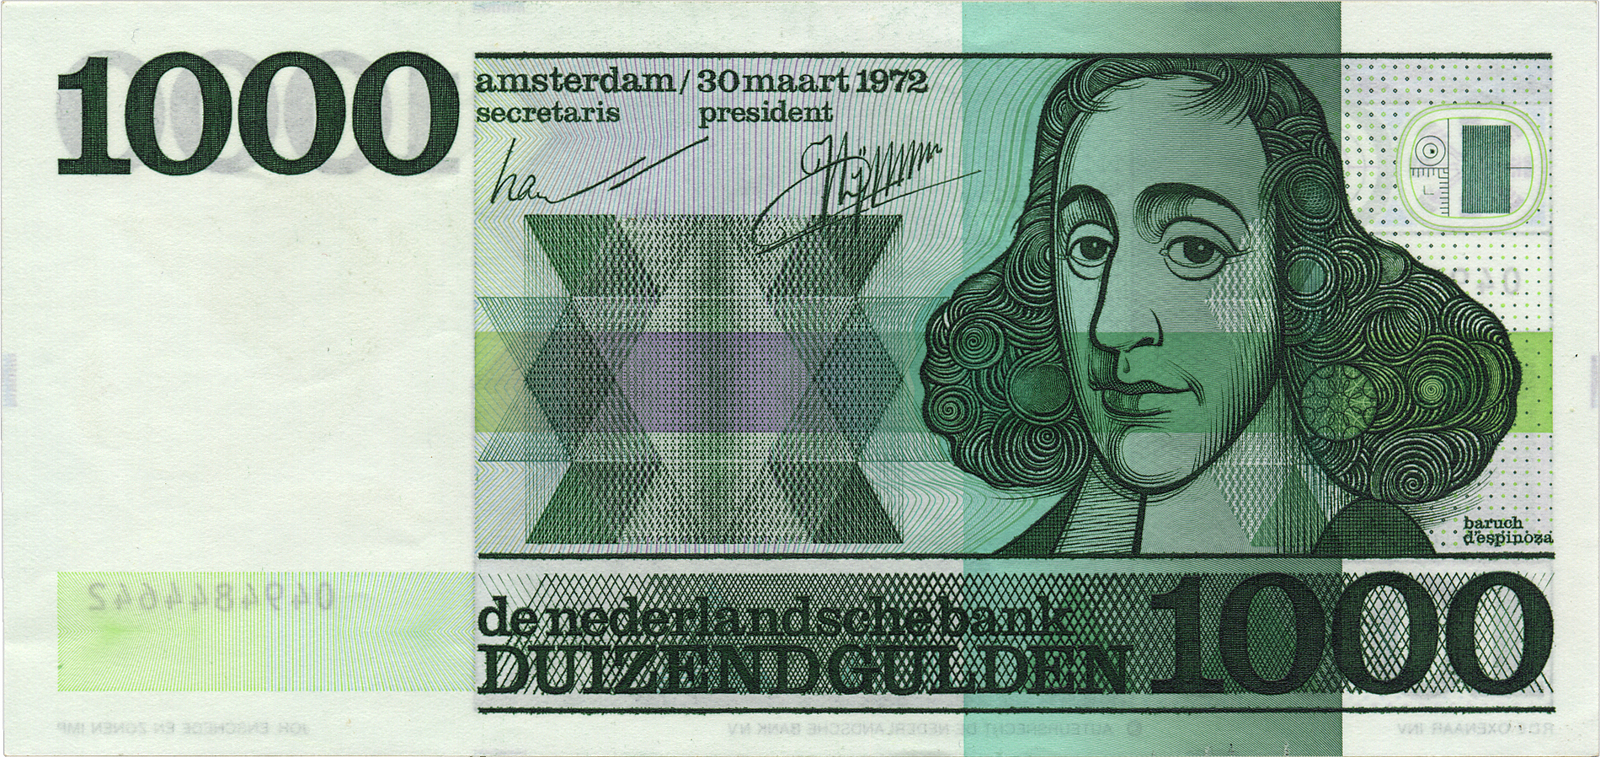 Spinoza f 1000 (1972)